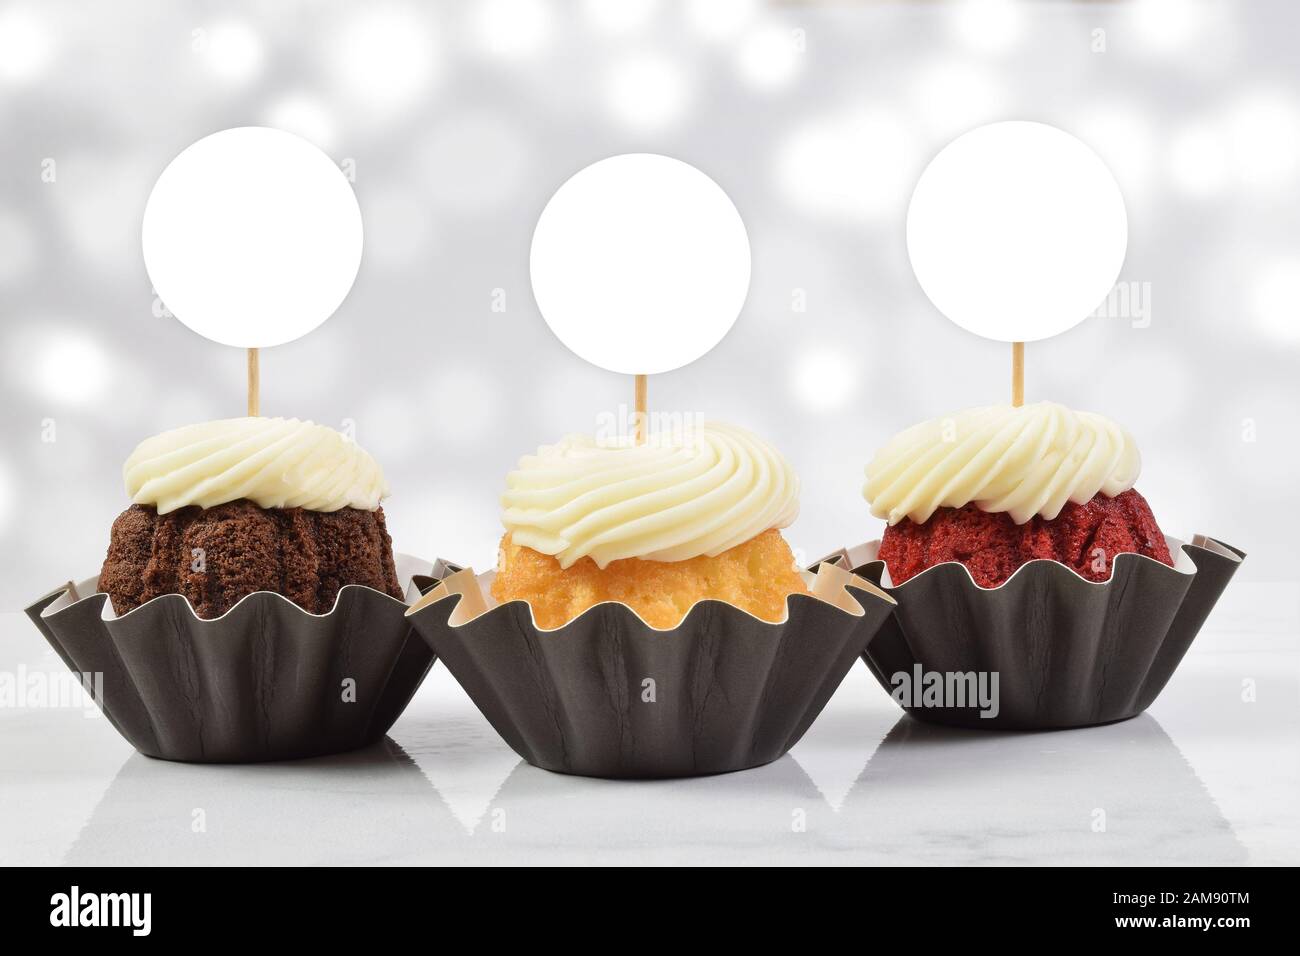 Ein verführerisches Cupcake-Topp mit drei leckeren Gourmet-Cupcakes auf weißem Marmorhintergrund. Fügen Sie Ihren eigenen Entwurf zu den Kupentürenoberhäuschen hinzu. Stockfoto